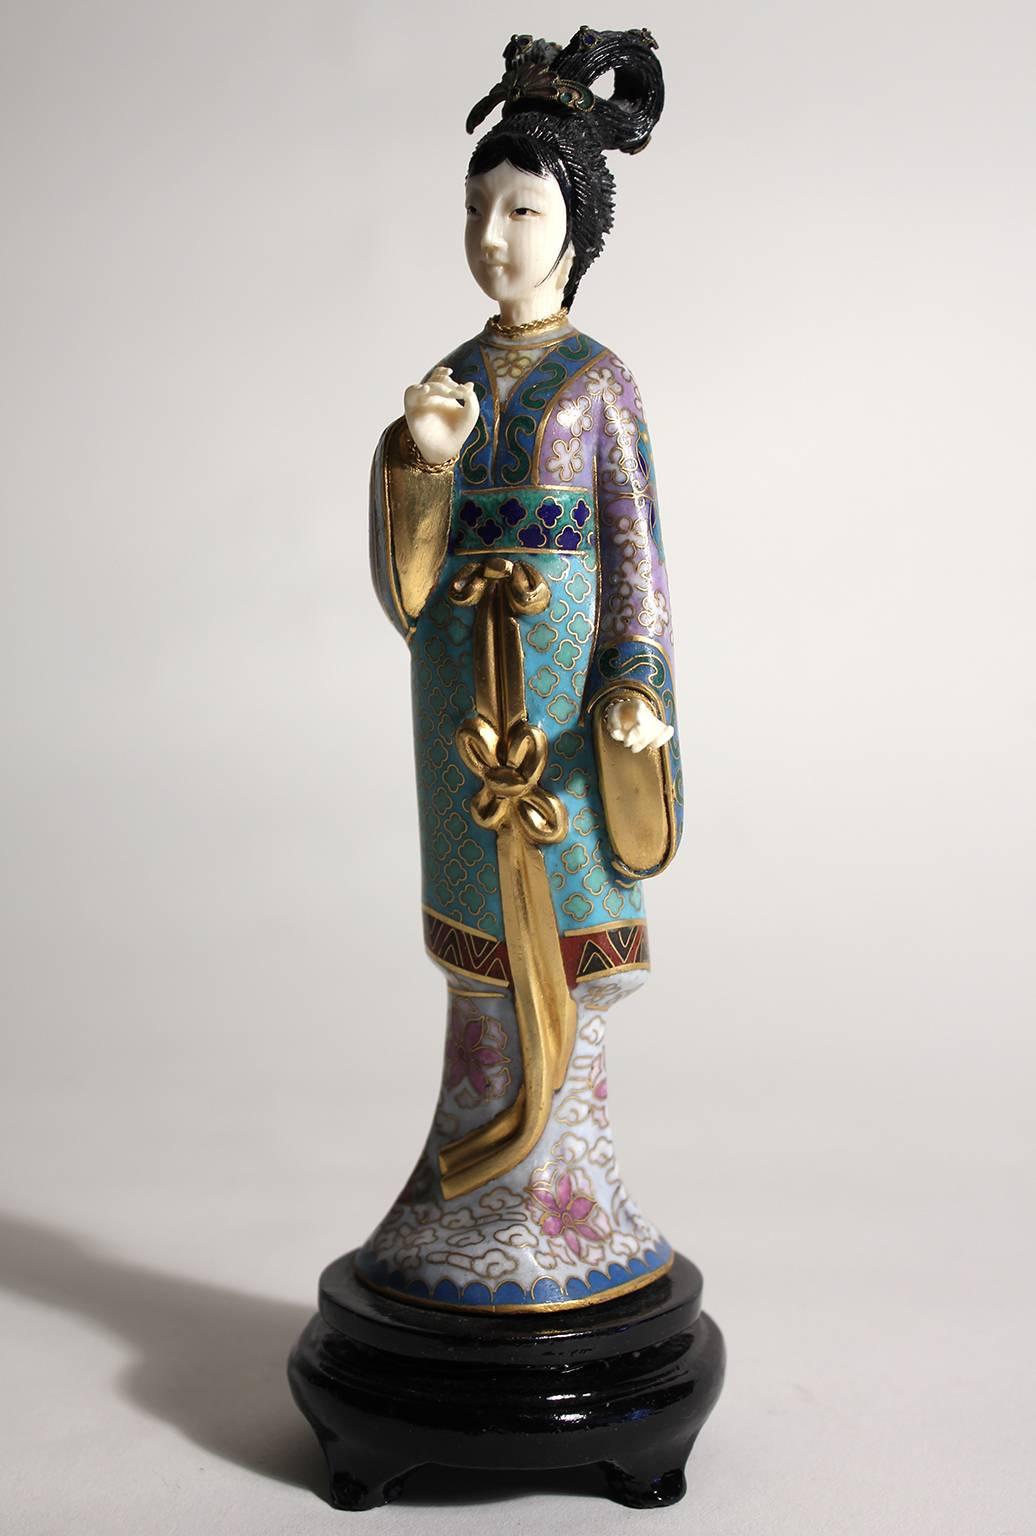 Superbe figurine/sculpture chinoise Guanyin en émail cloisonné. Livré avec le support en bois d'origine. Les mains et la tête sont sculptées. La couleur est superbe et les détails sont inégalés. Mesures : 8 1/2